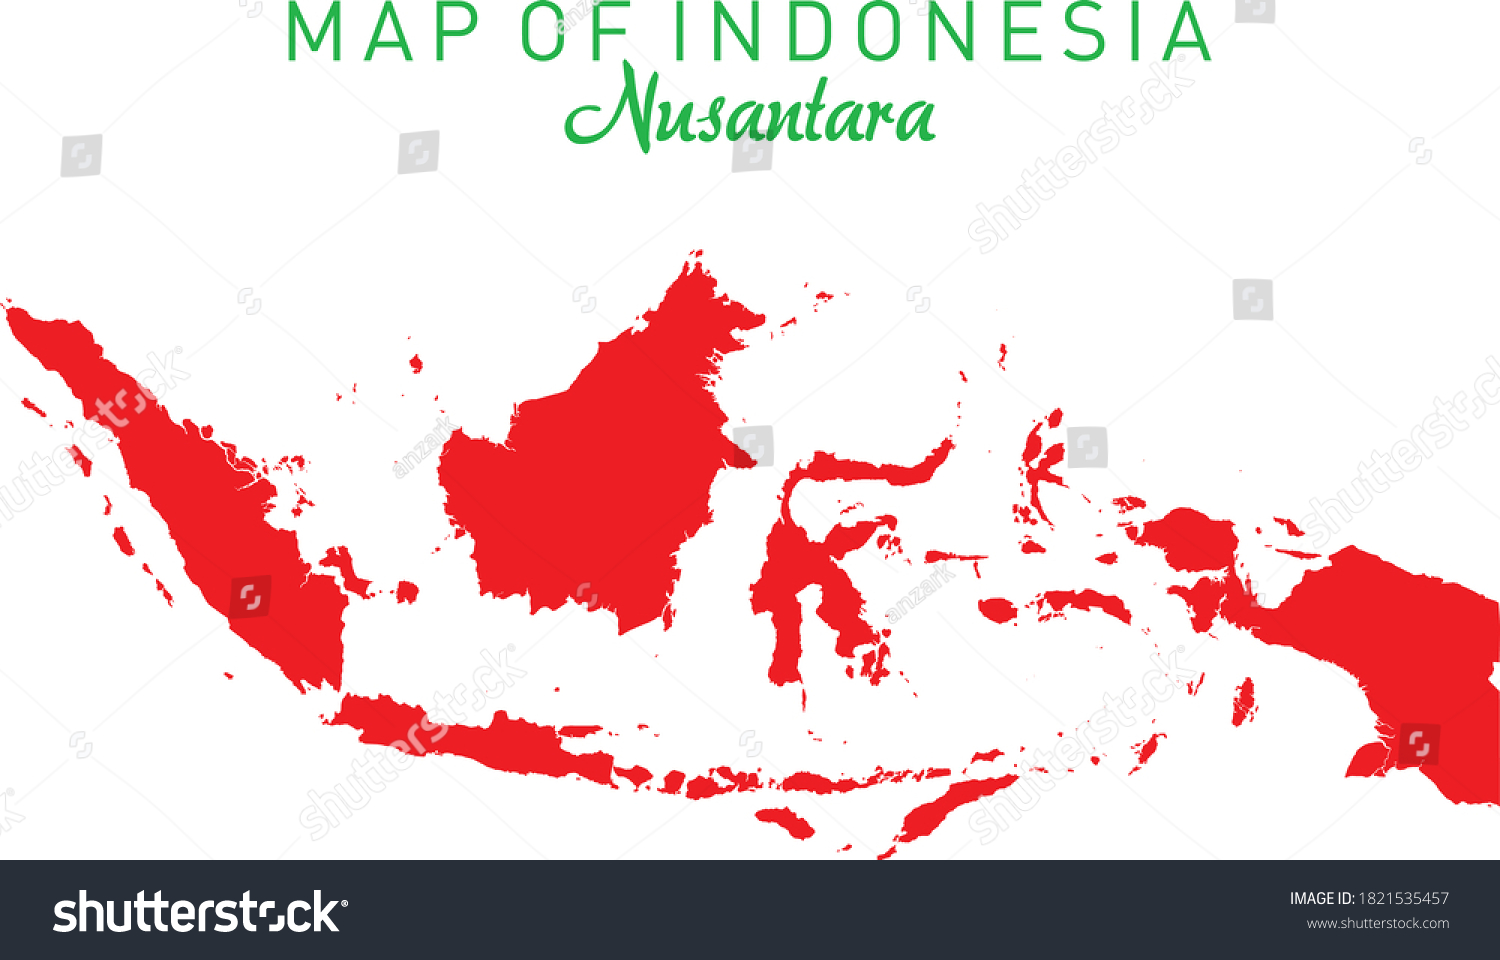 Nusantara indonesia